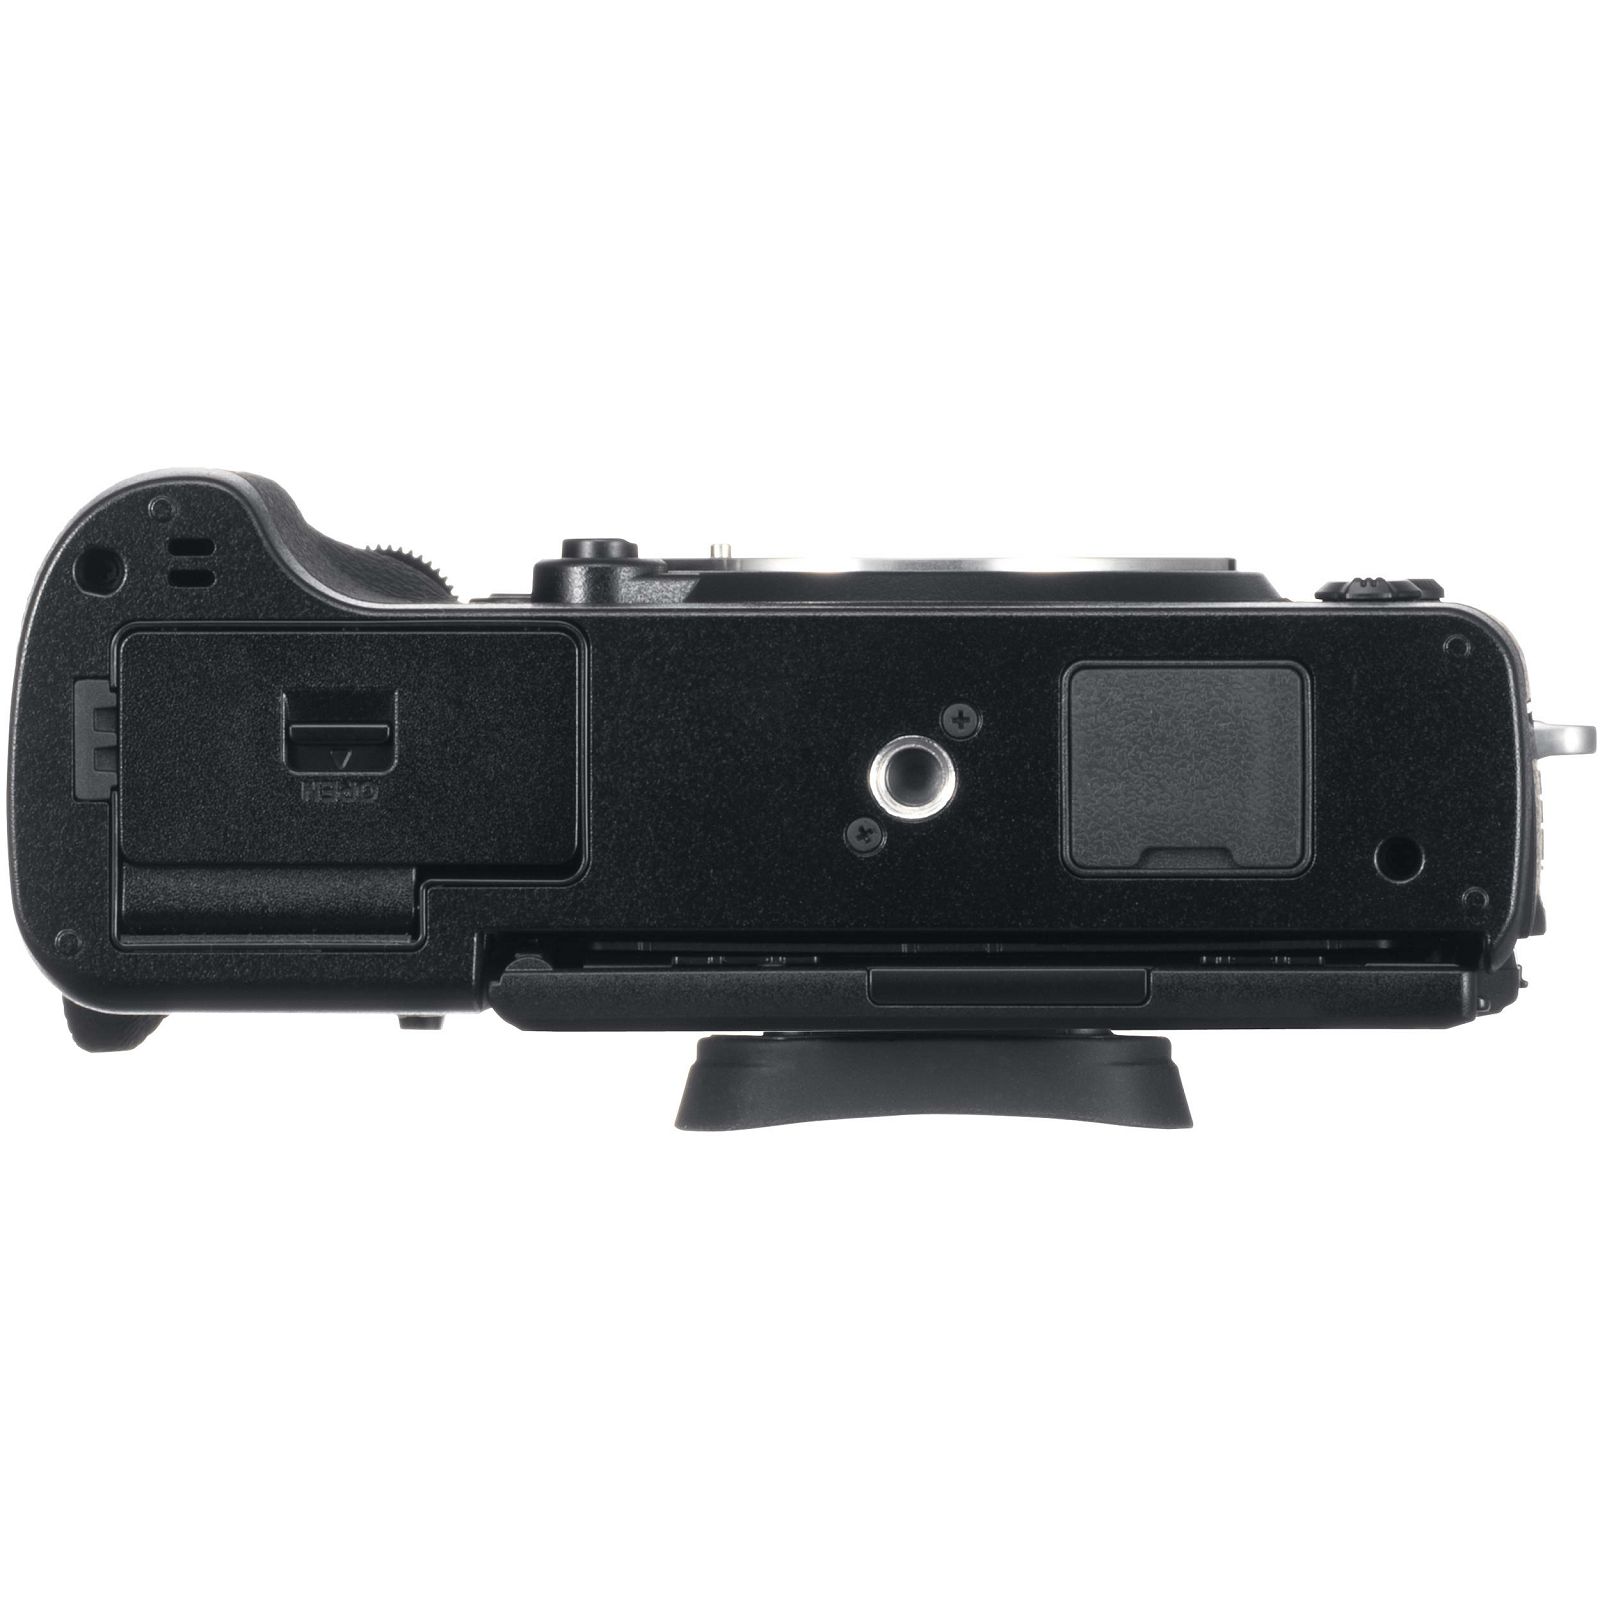 Fujifilm X-T3 + 18-55 KIT Black crni digitalni mirrorless fotoaparat s objektivom XF 18-55mm f/2.8-4 R LM OIS Fuji Finepix XT3